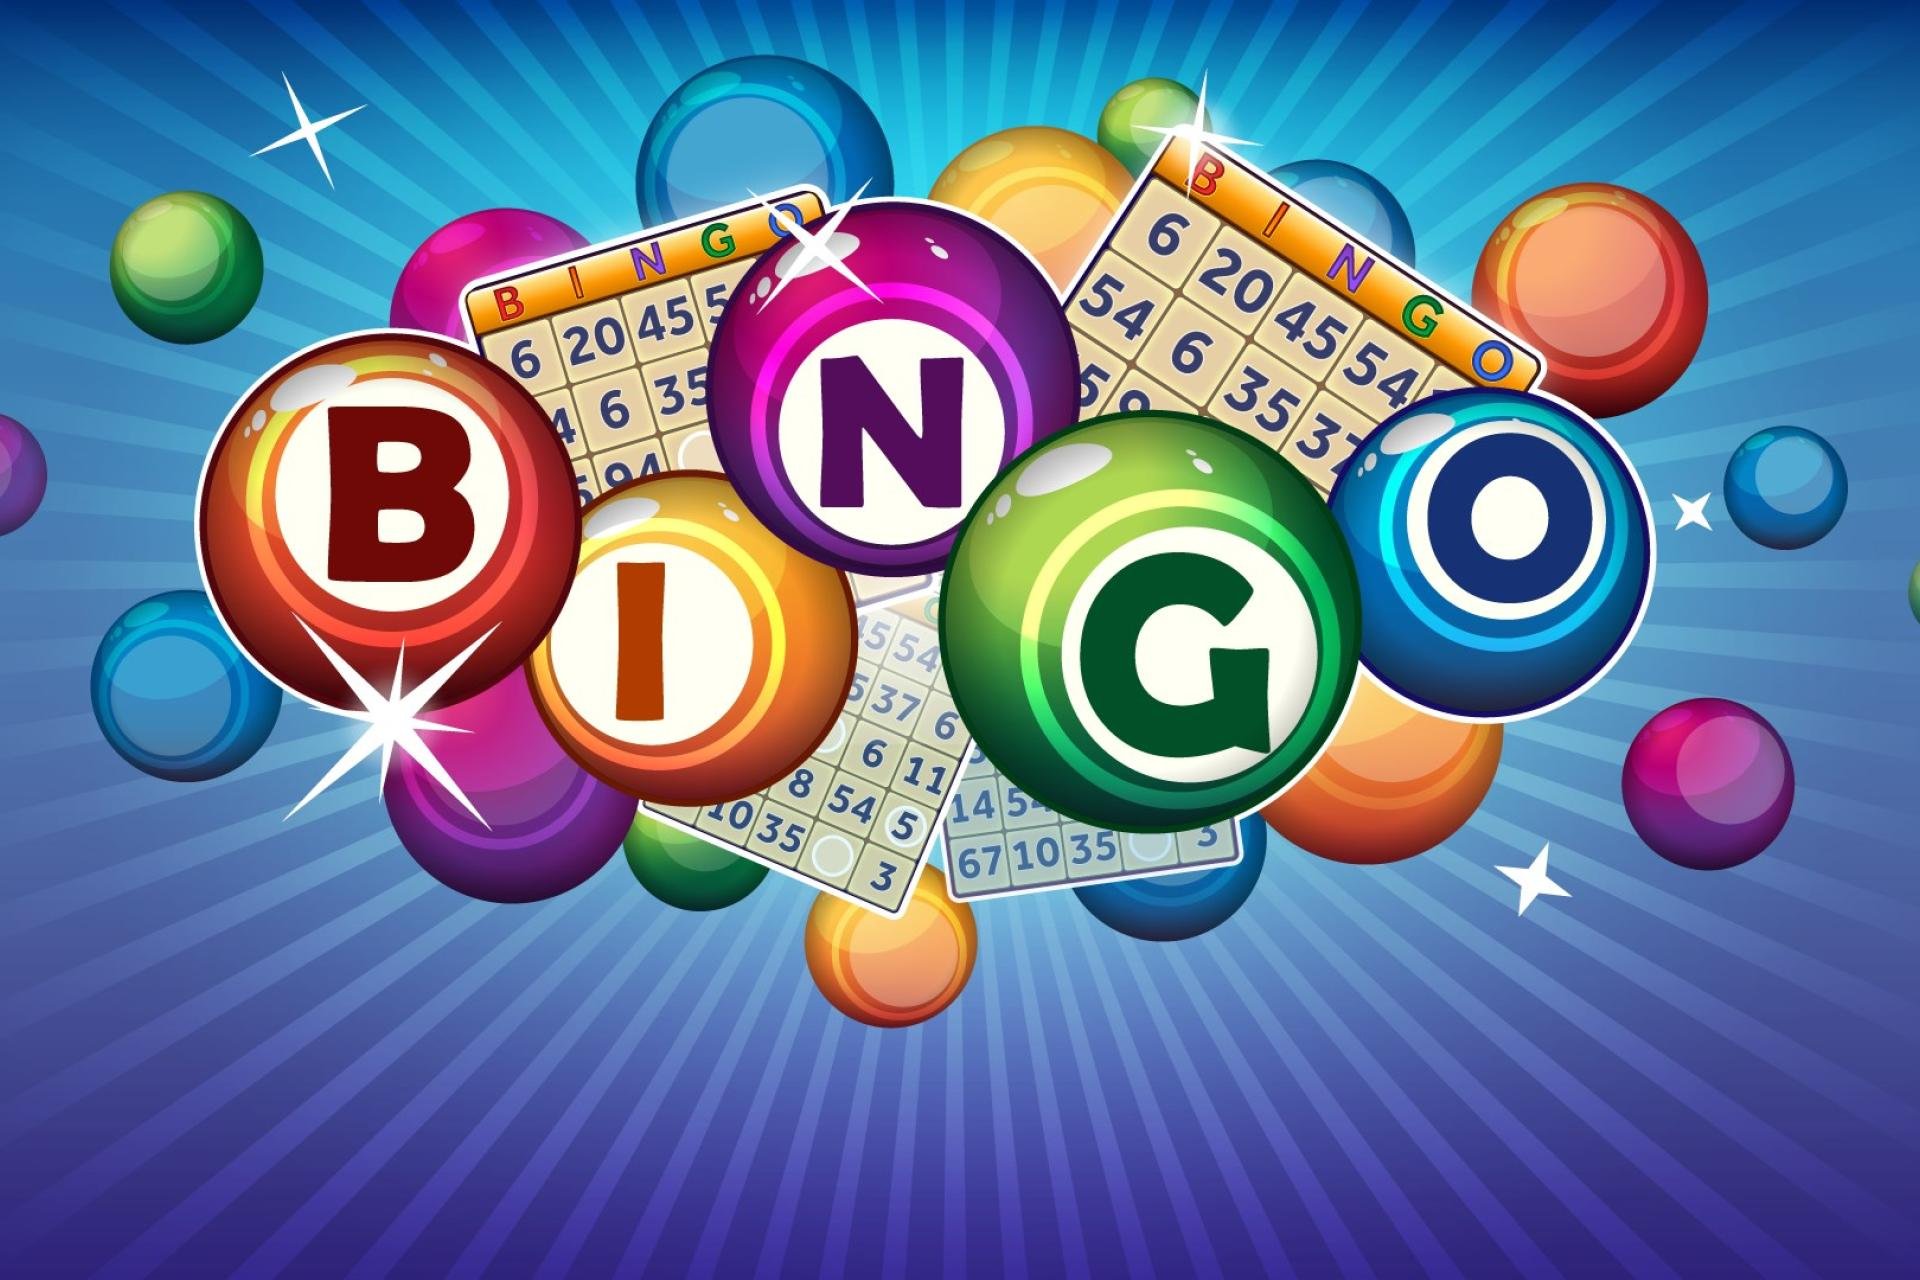 kleurige tekst bingo met bingokaarten